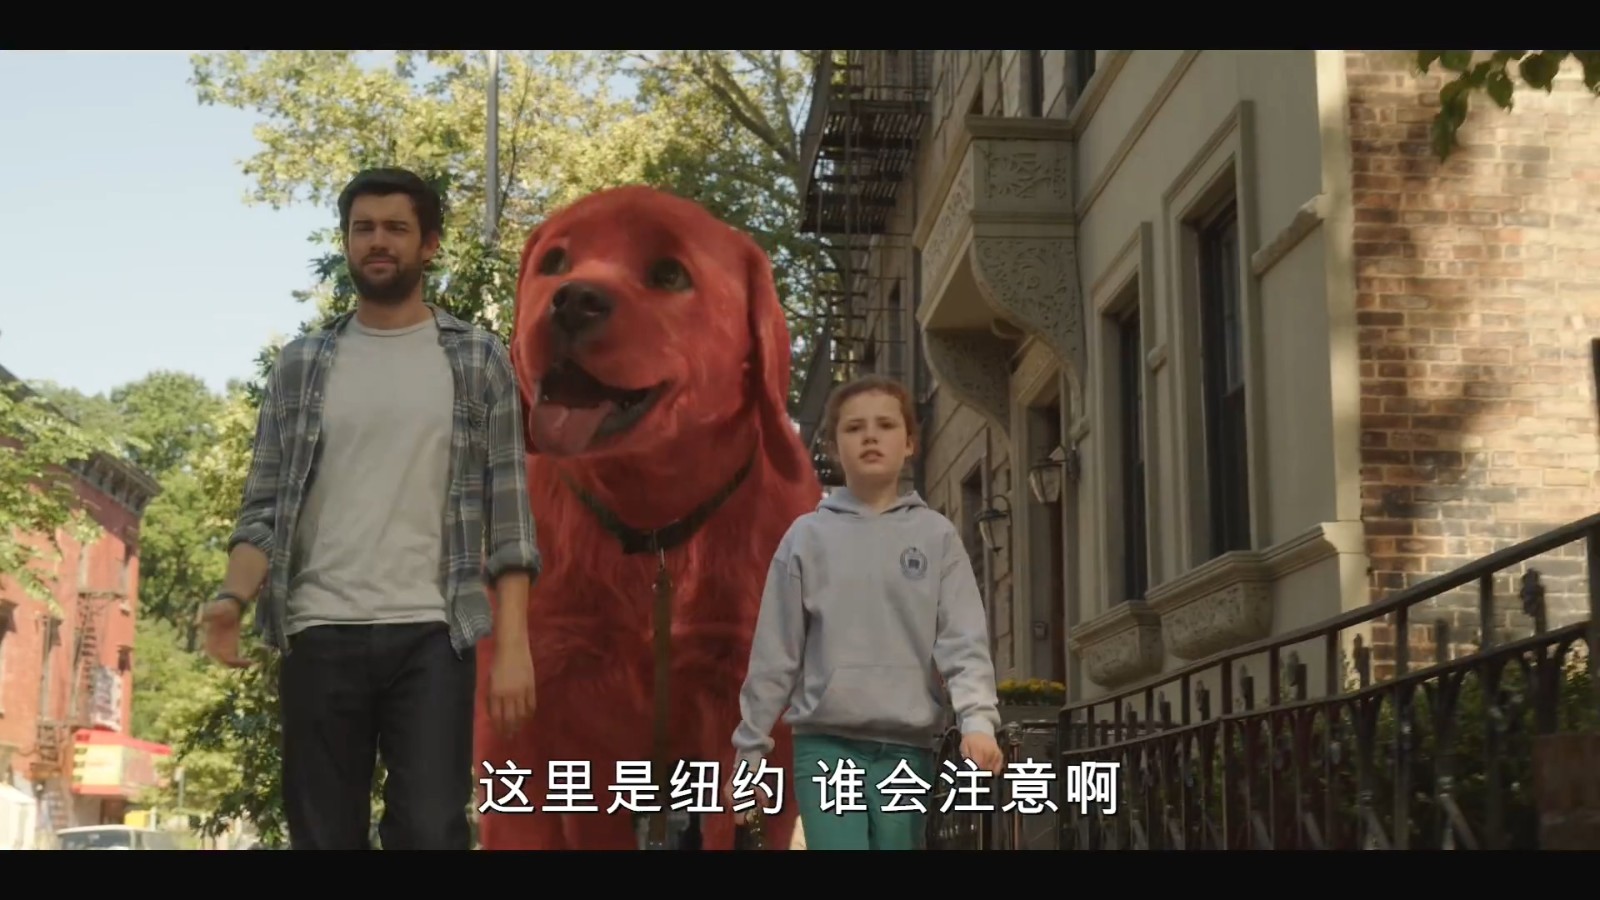 《大红狗克里弗》首部中字预告 9月17日北美上映